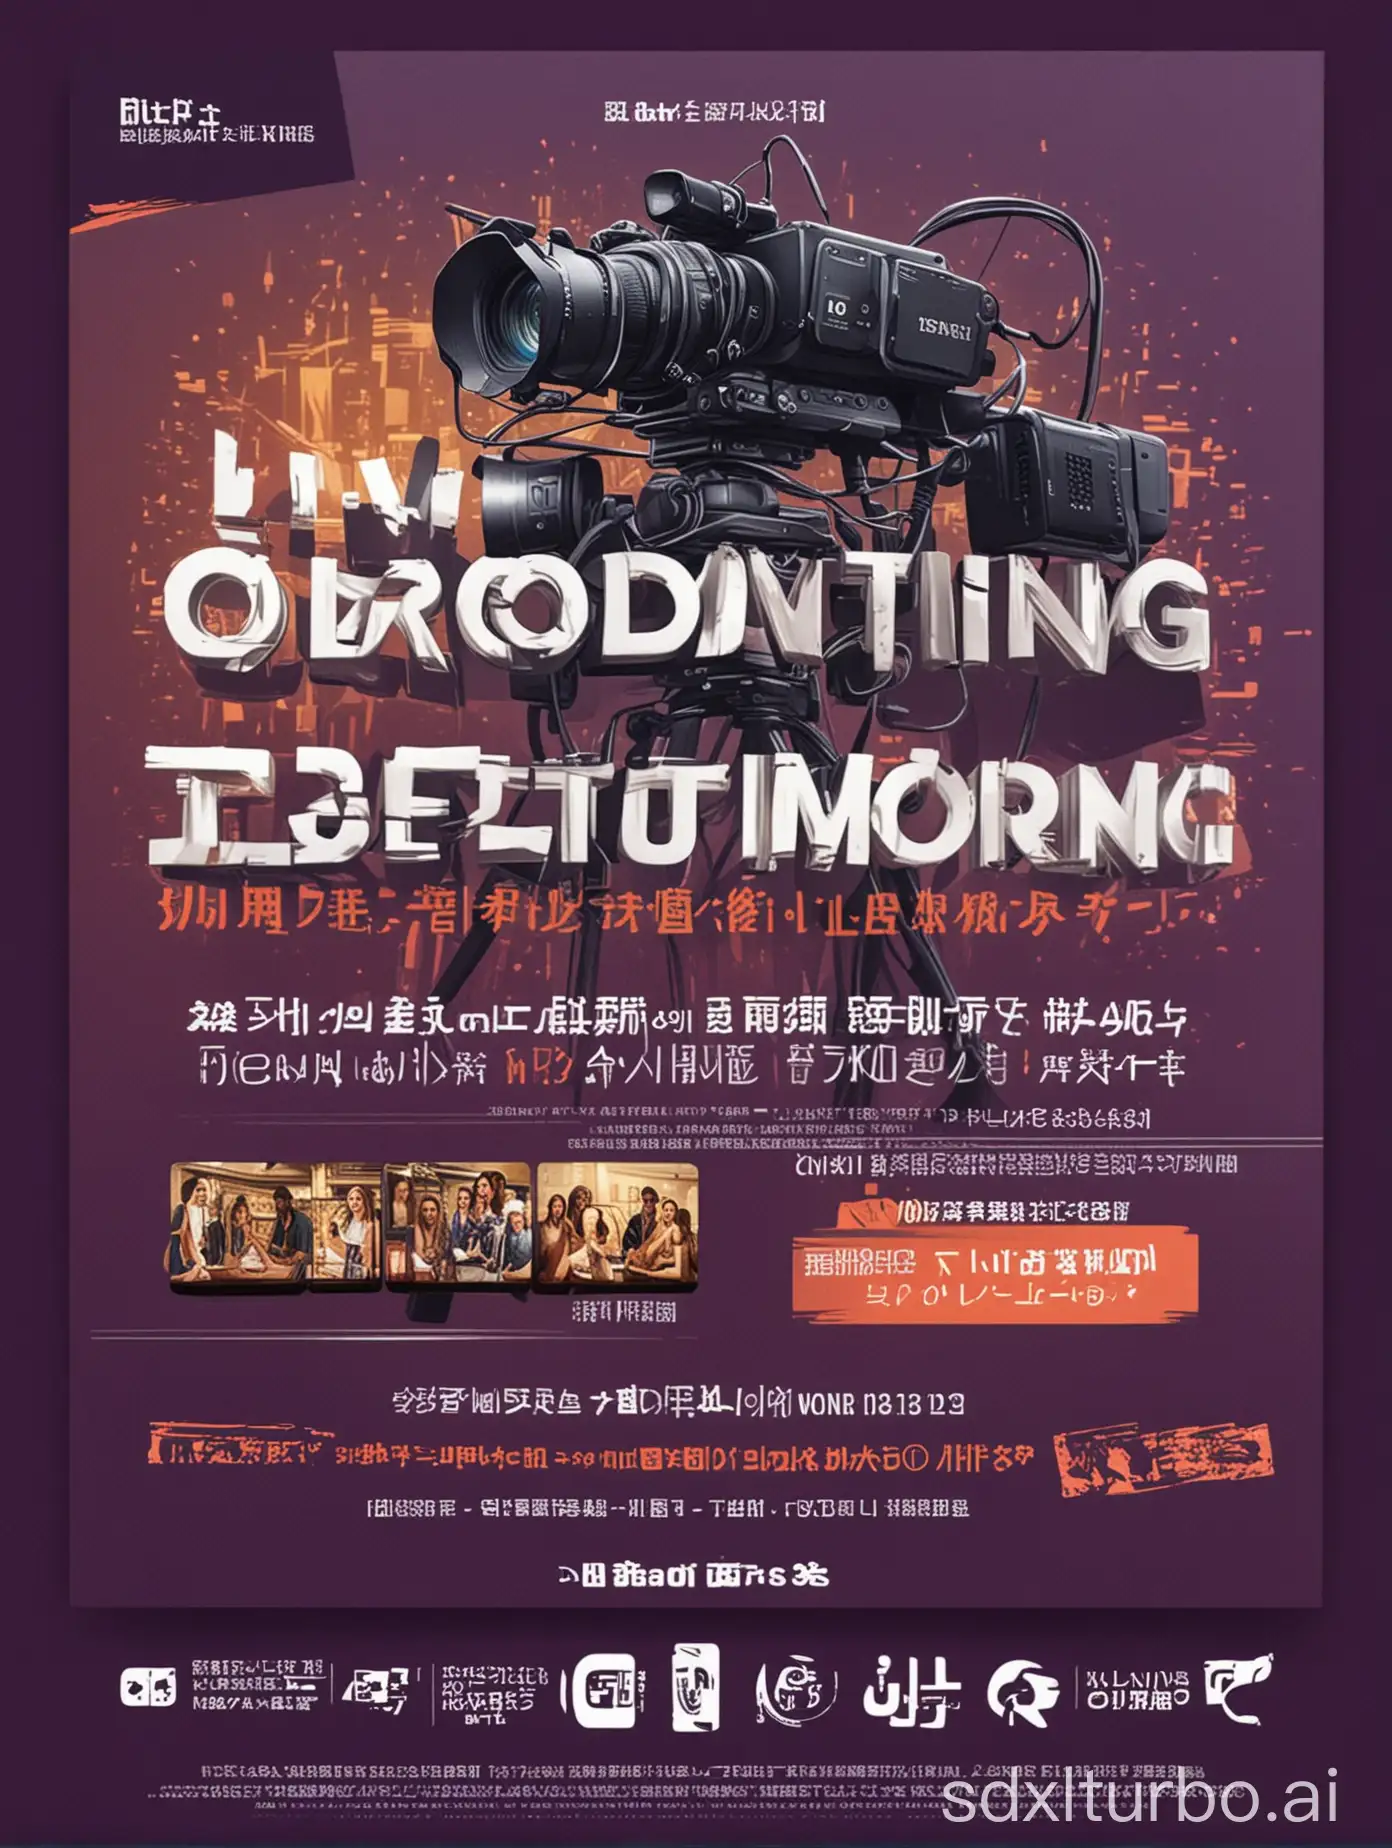 Dynamic-Live-Broadcasting-Platform-Promotional-Poster